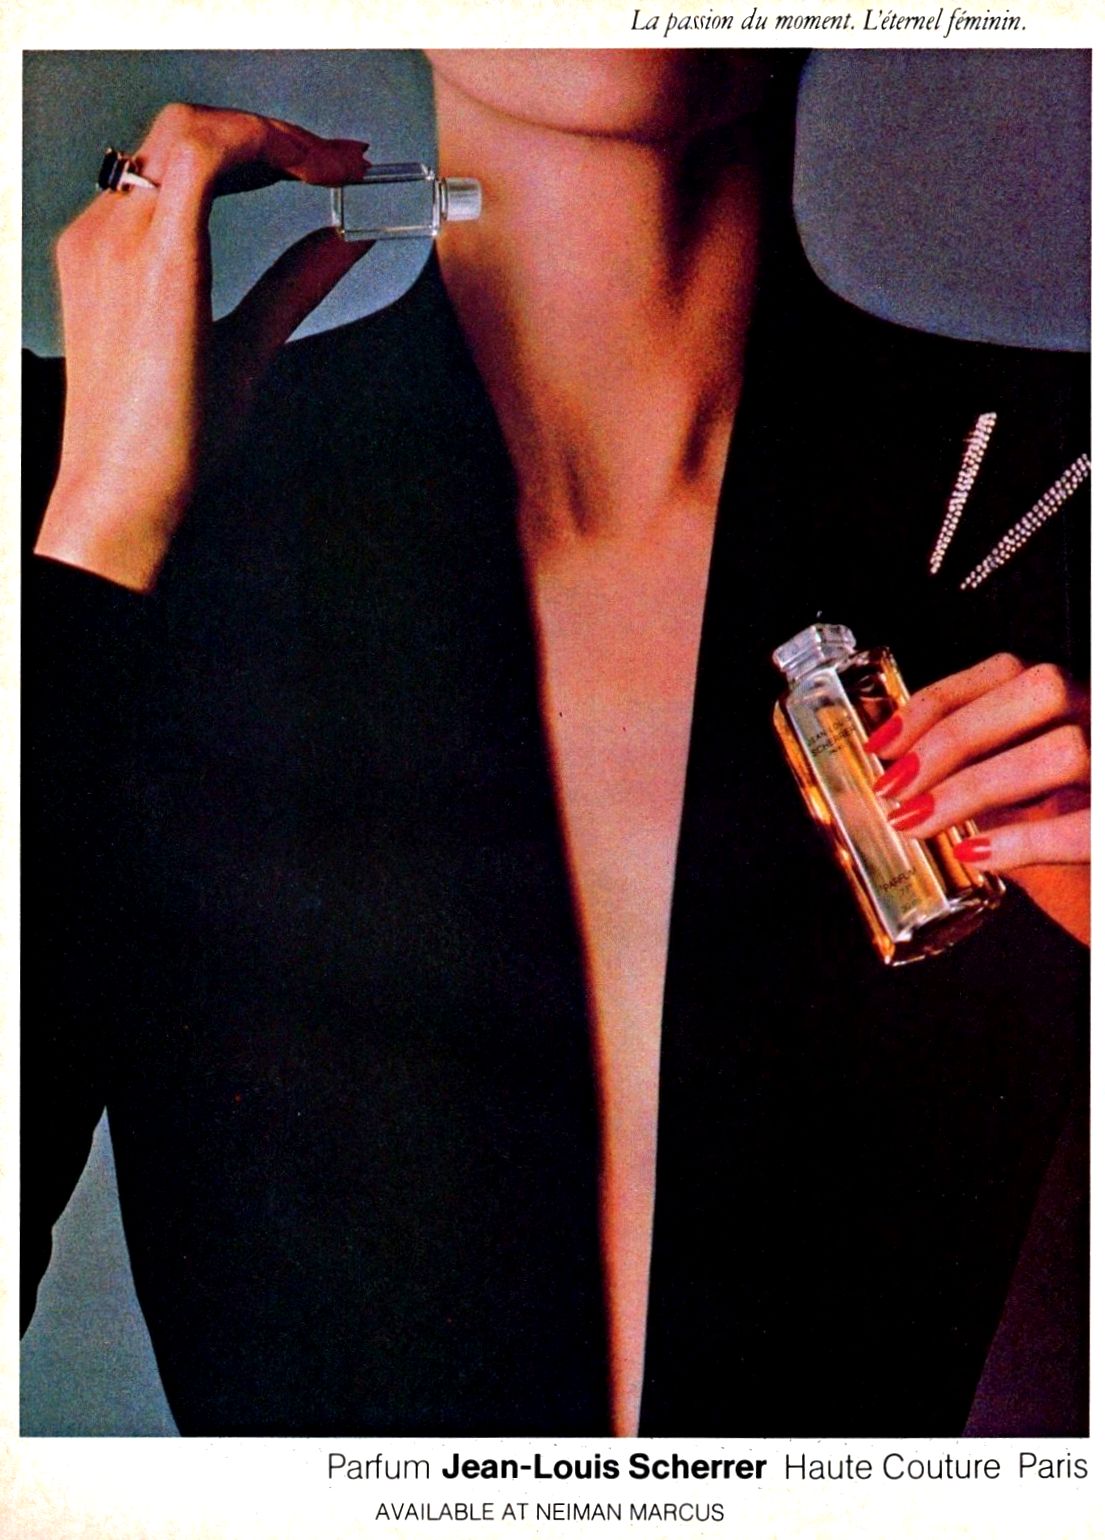 Jean-Louis Scherrer pure parfum 15 ml. Rare, vintage first edition